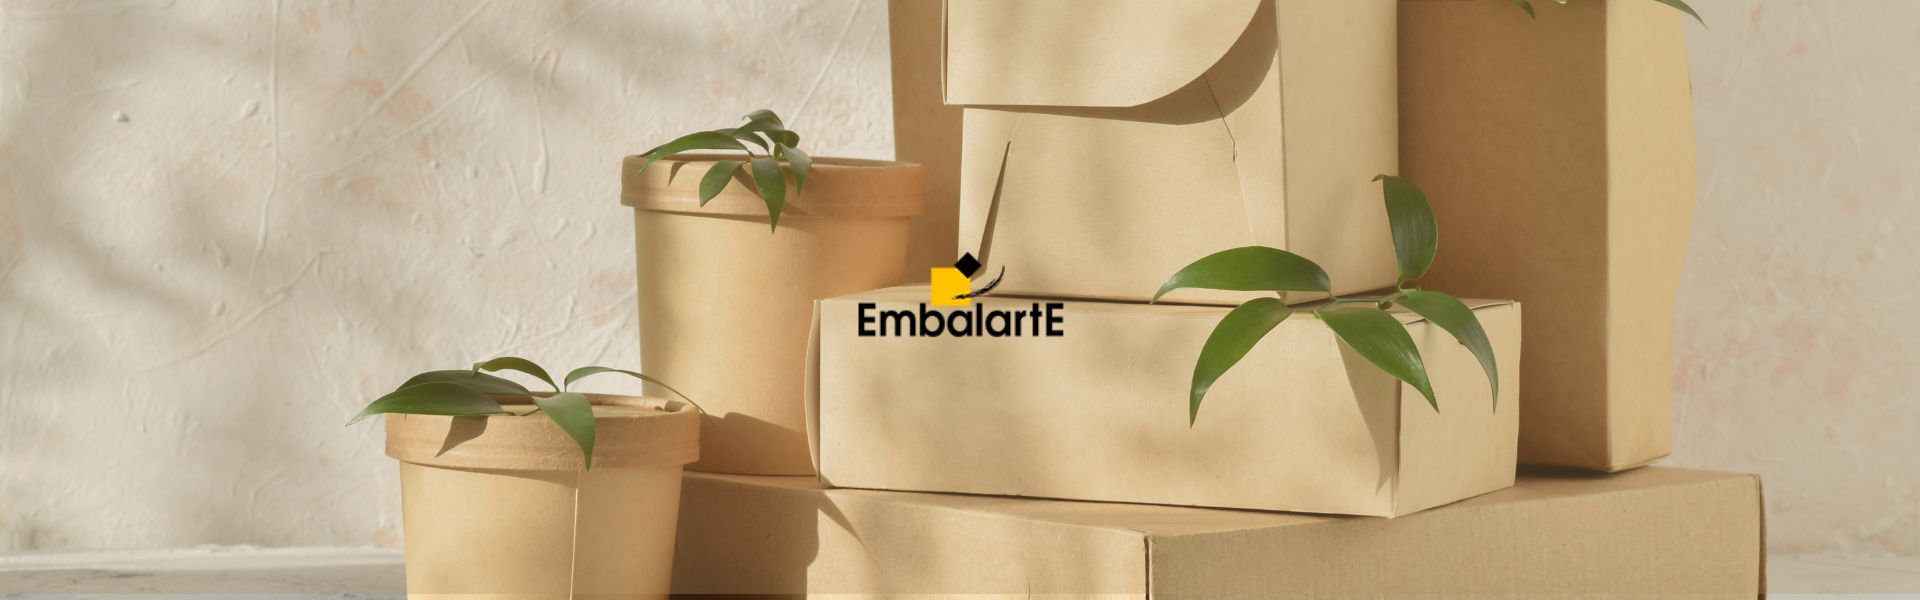 Embalajes sostenibles - EmbalartE